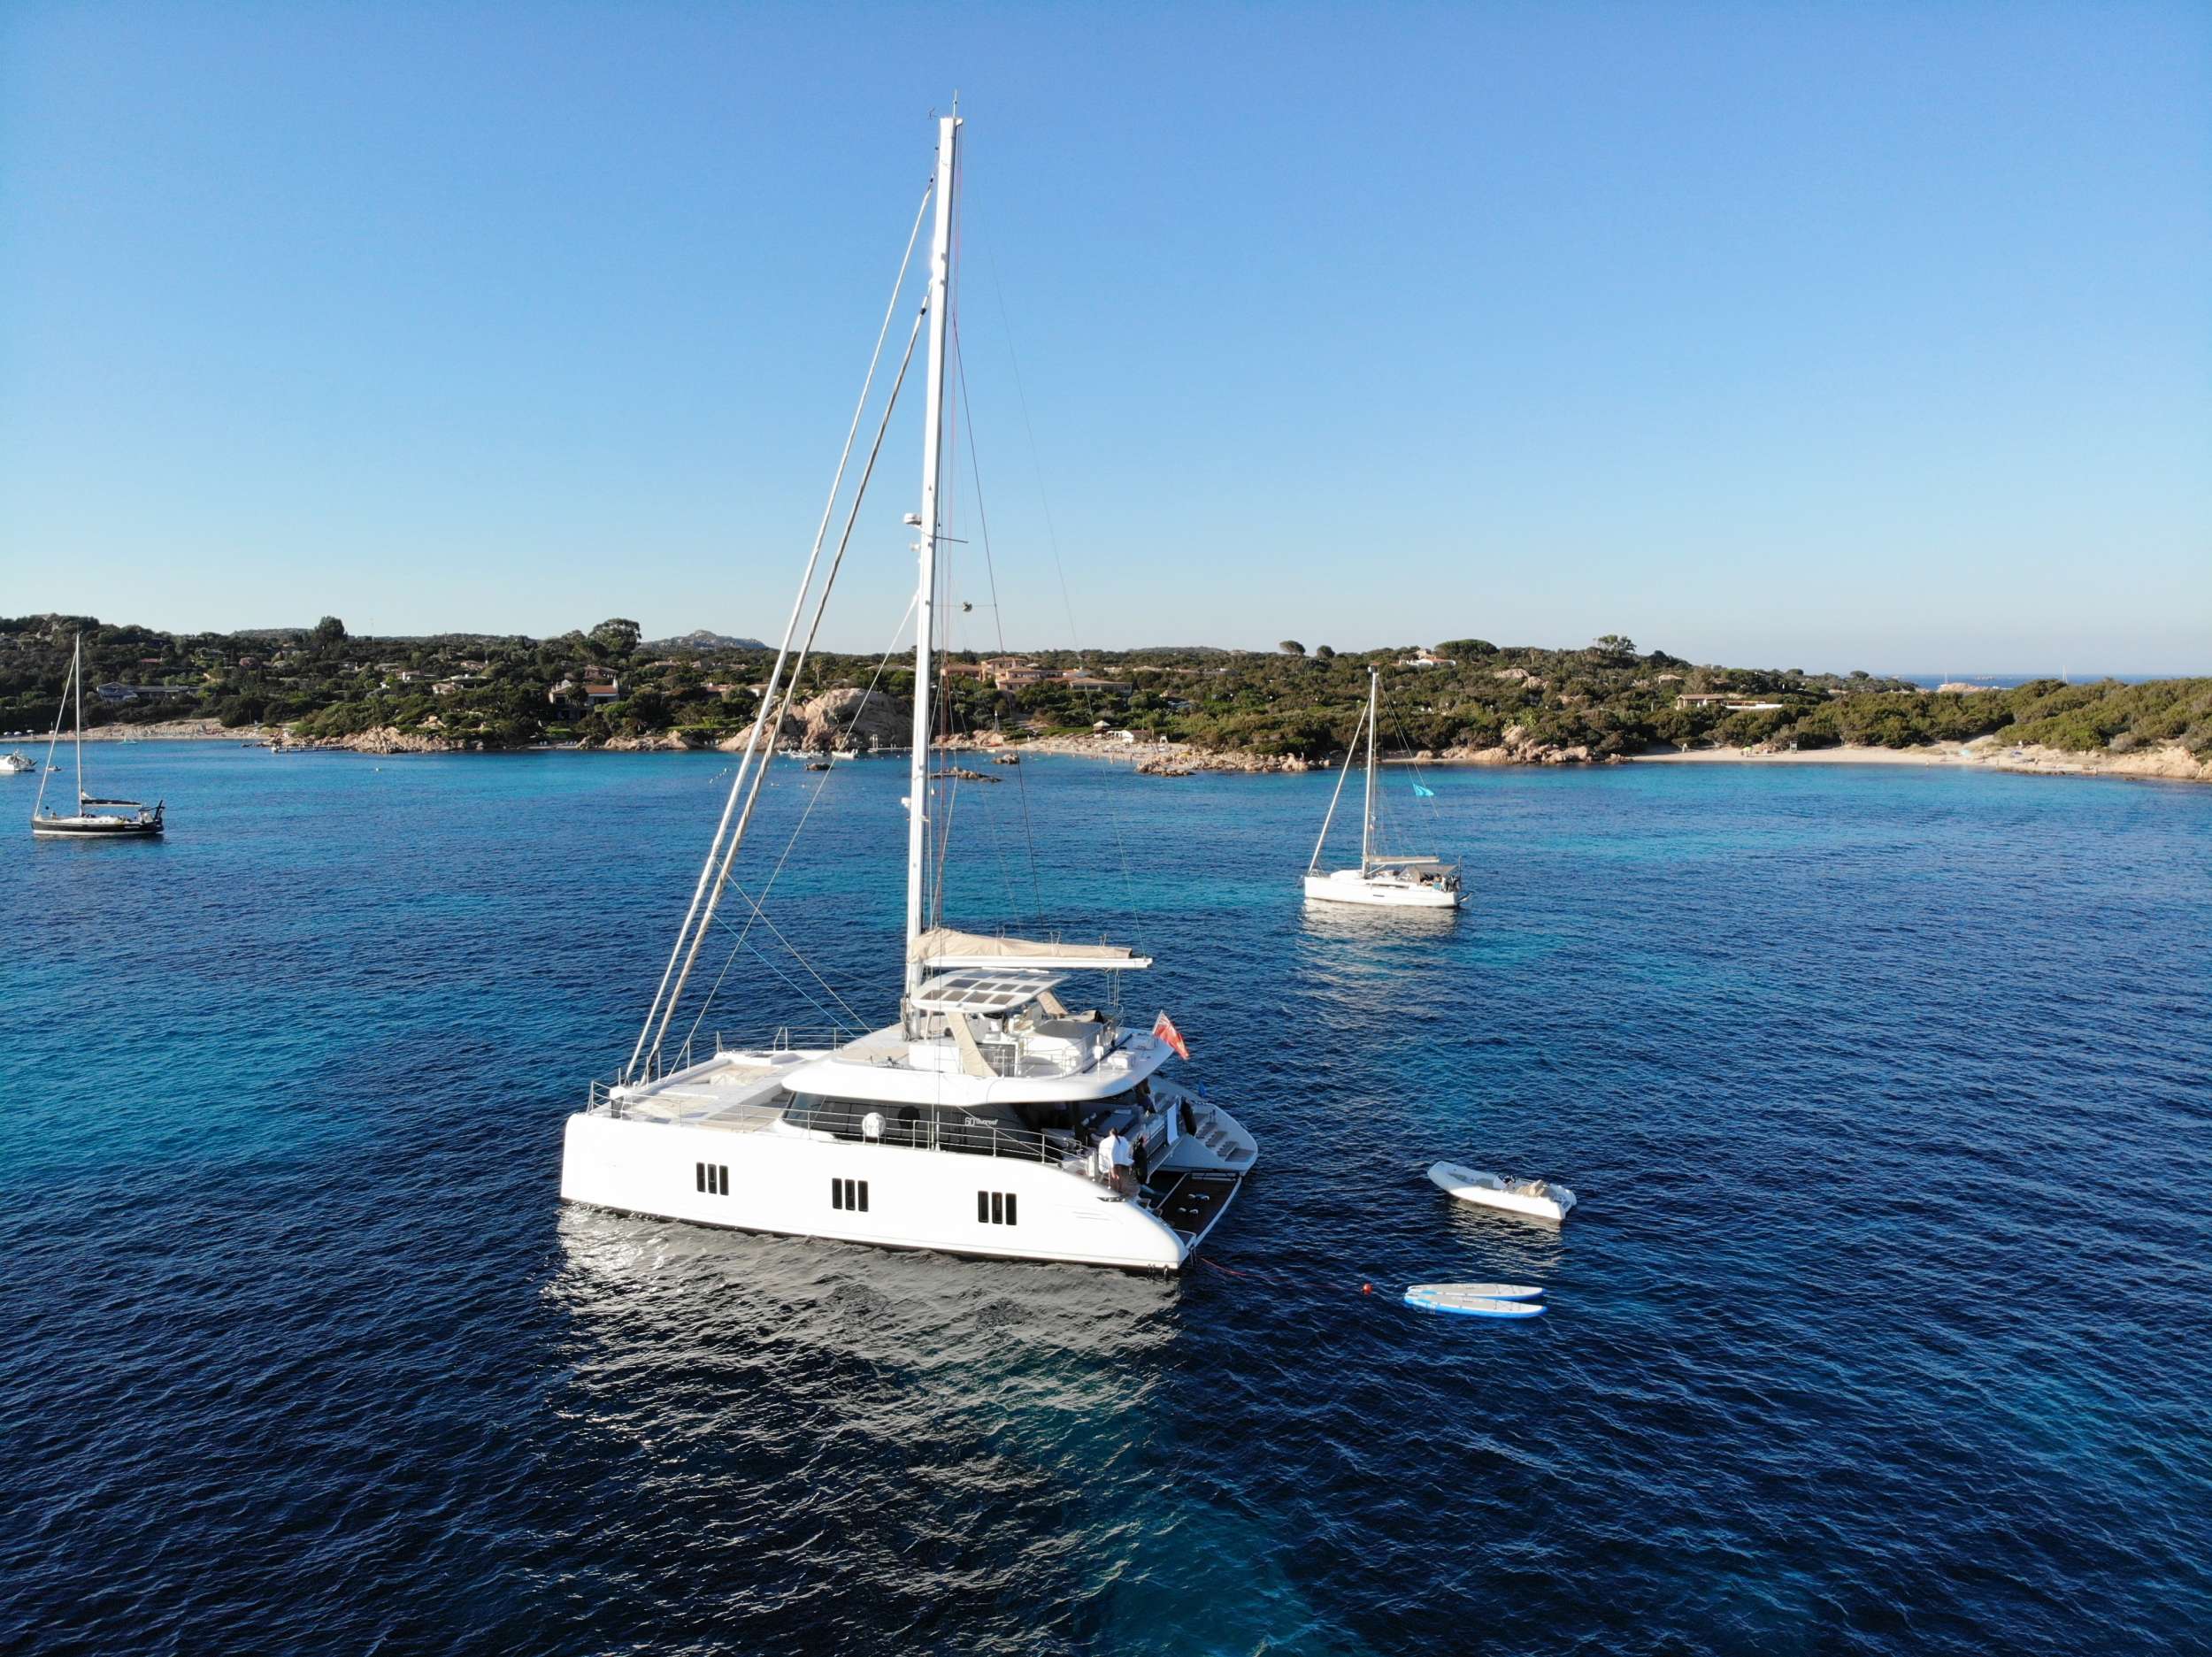 DAWN - Yacht Charter Monaco & Boat hire in Fr. Riviera, Corsica & Sardinia 1